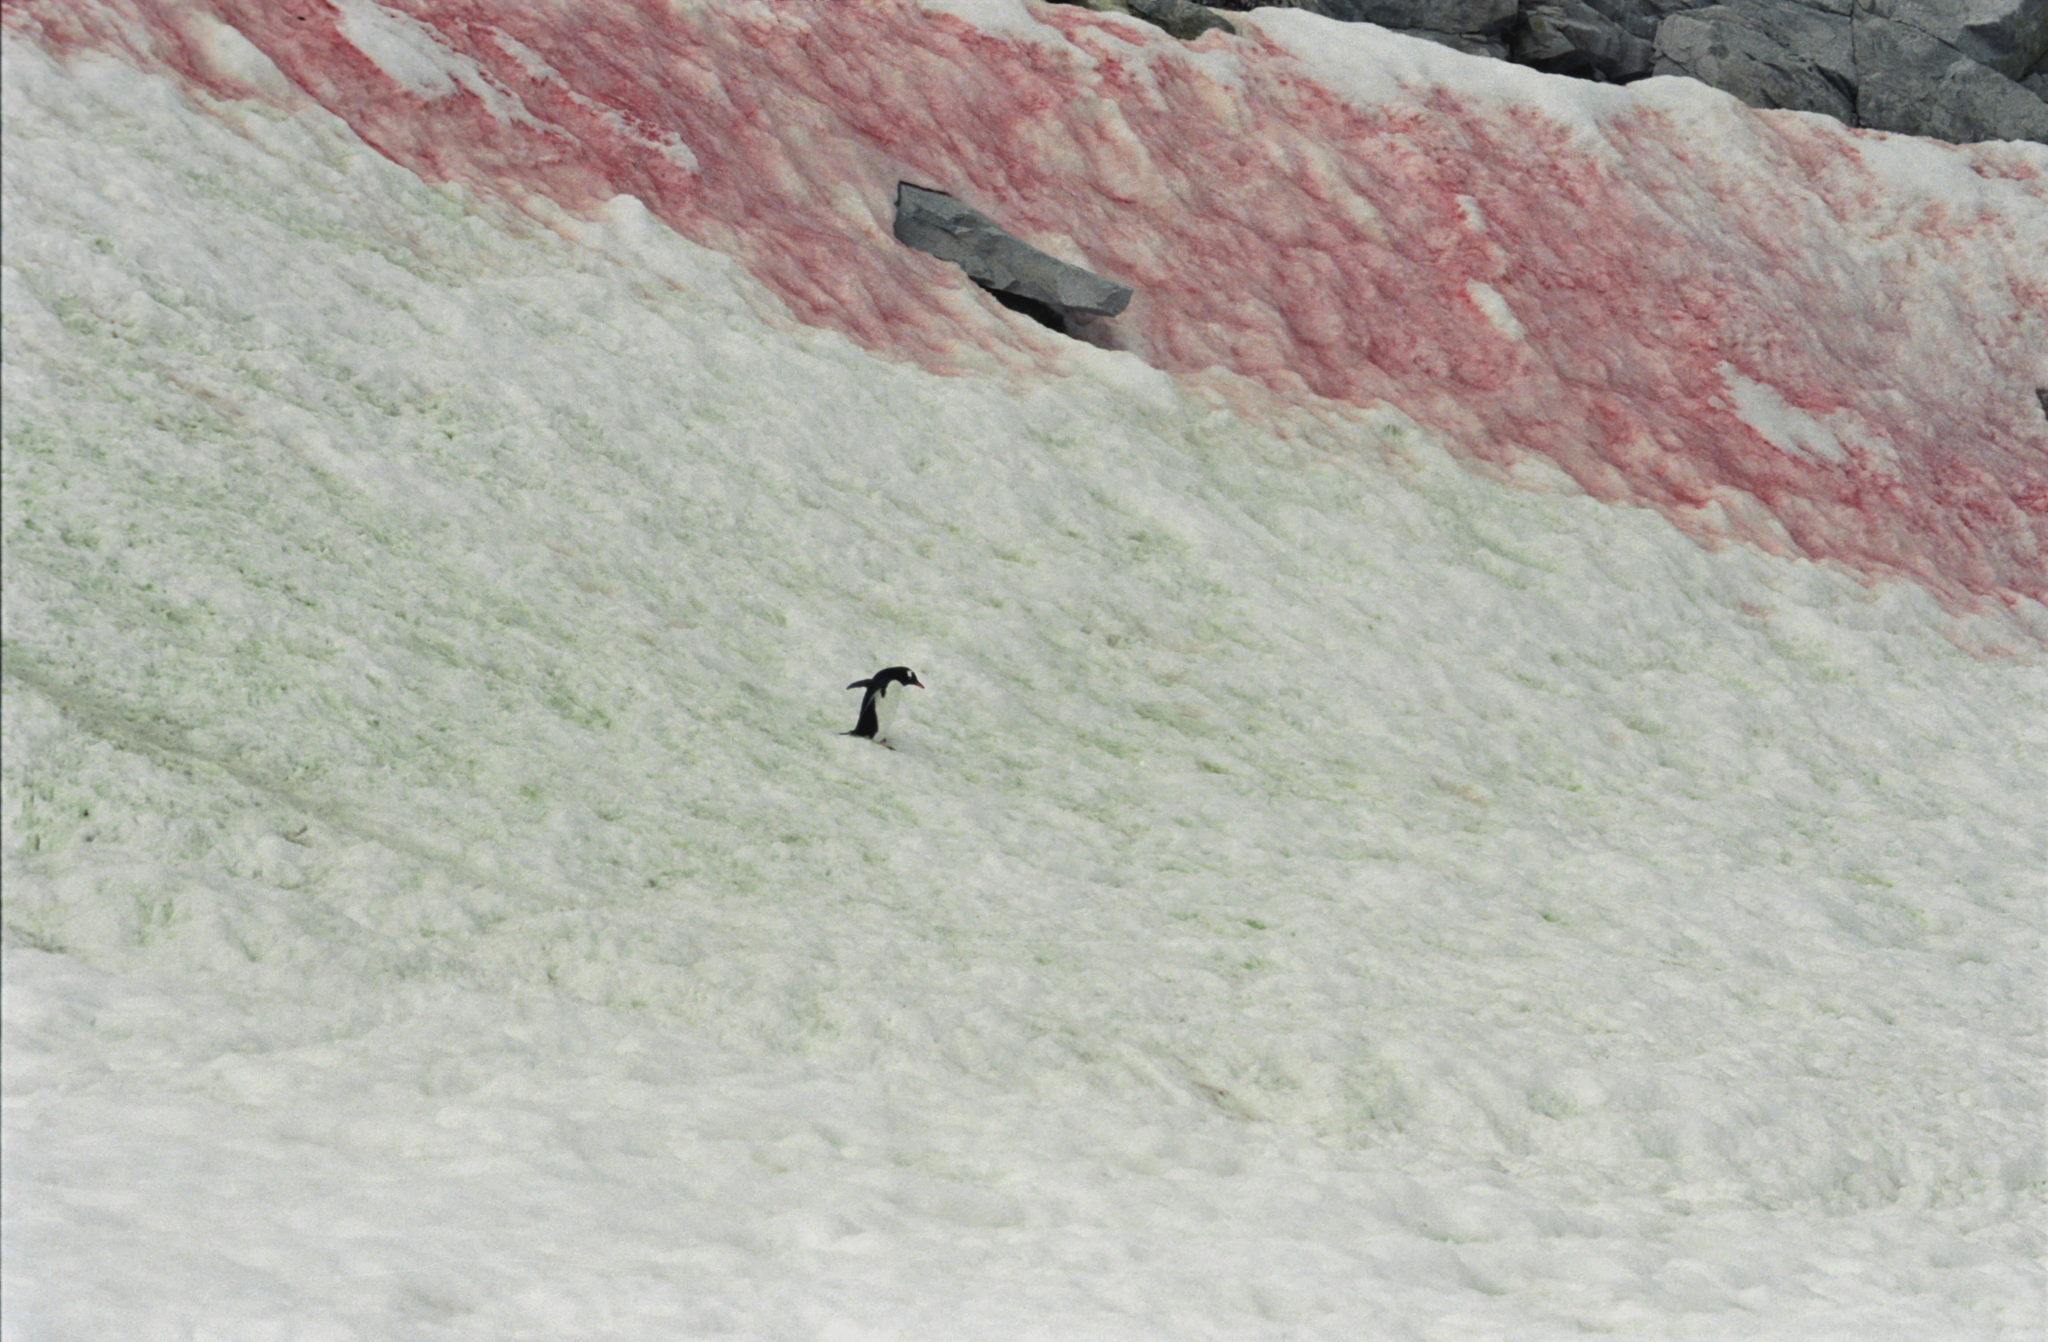 Pinguin in der Antarktis vor rot und grün eingefärbtem Schnee in der Antarktis. (Ort: Neko Harbour, Antarctica)